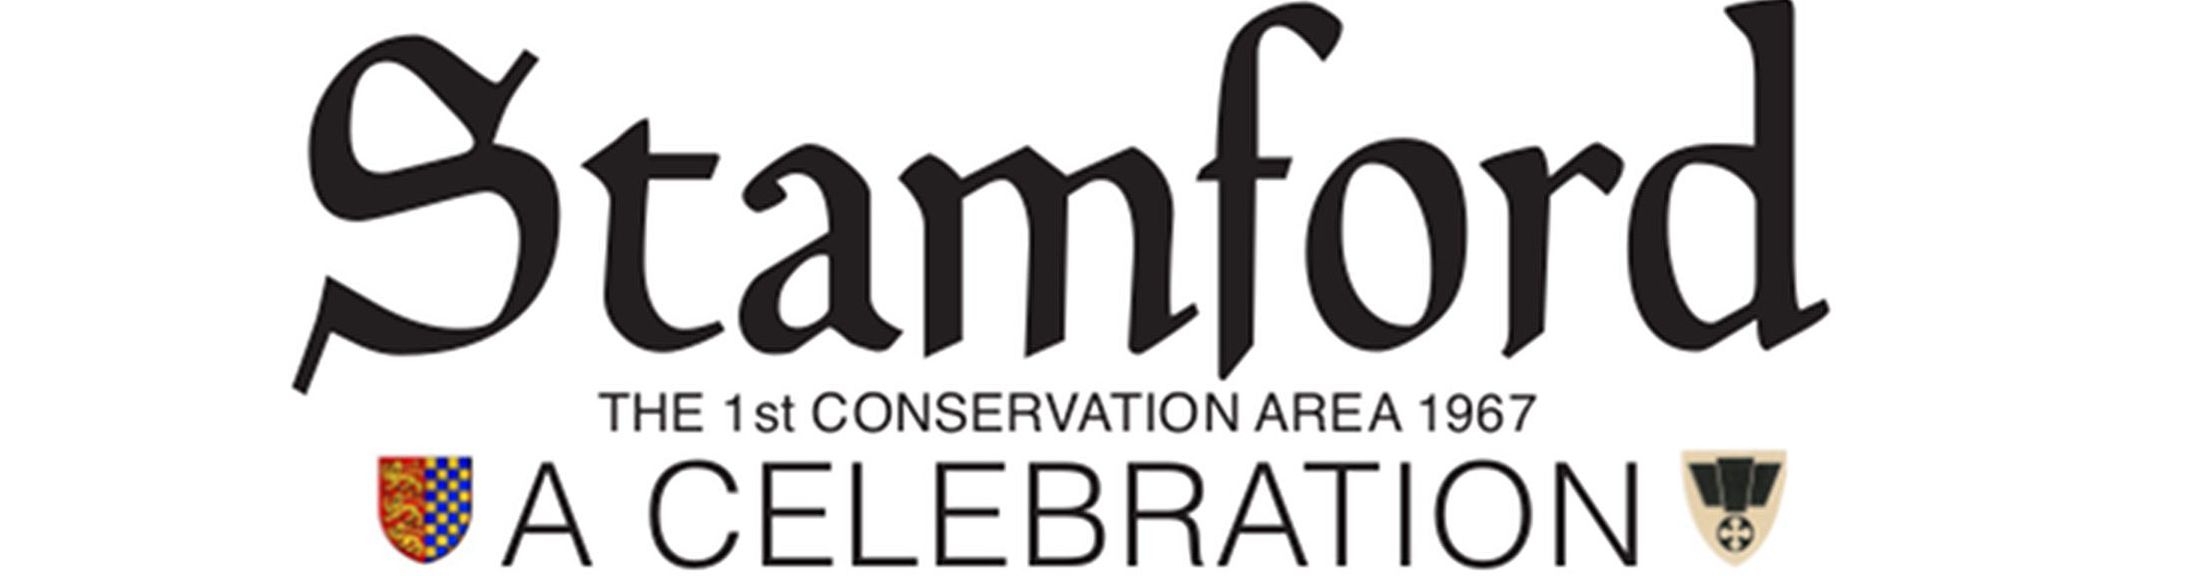 Stamford: a celebration (logo)